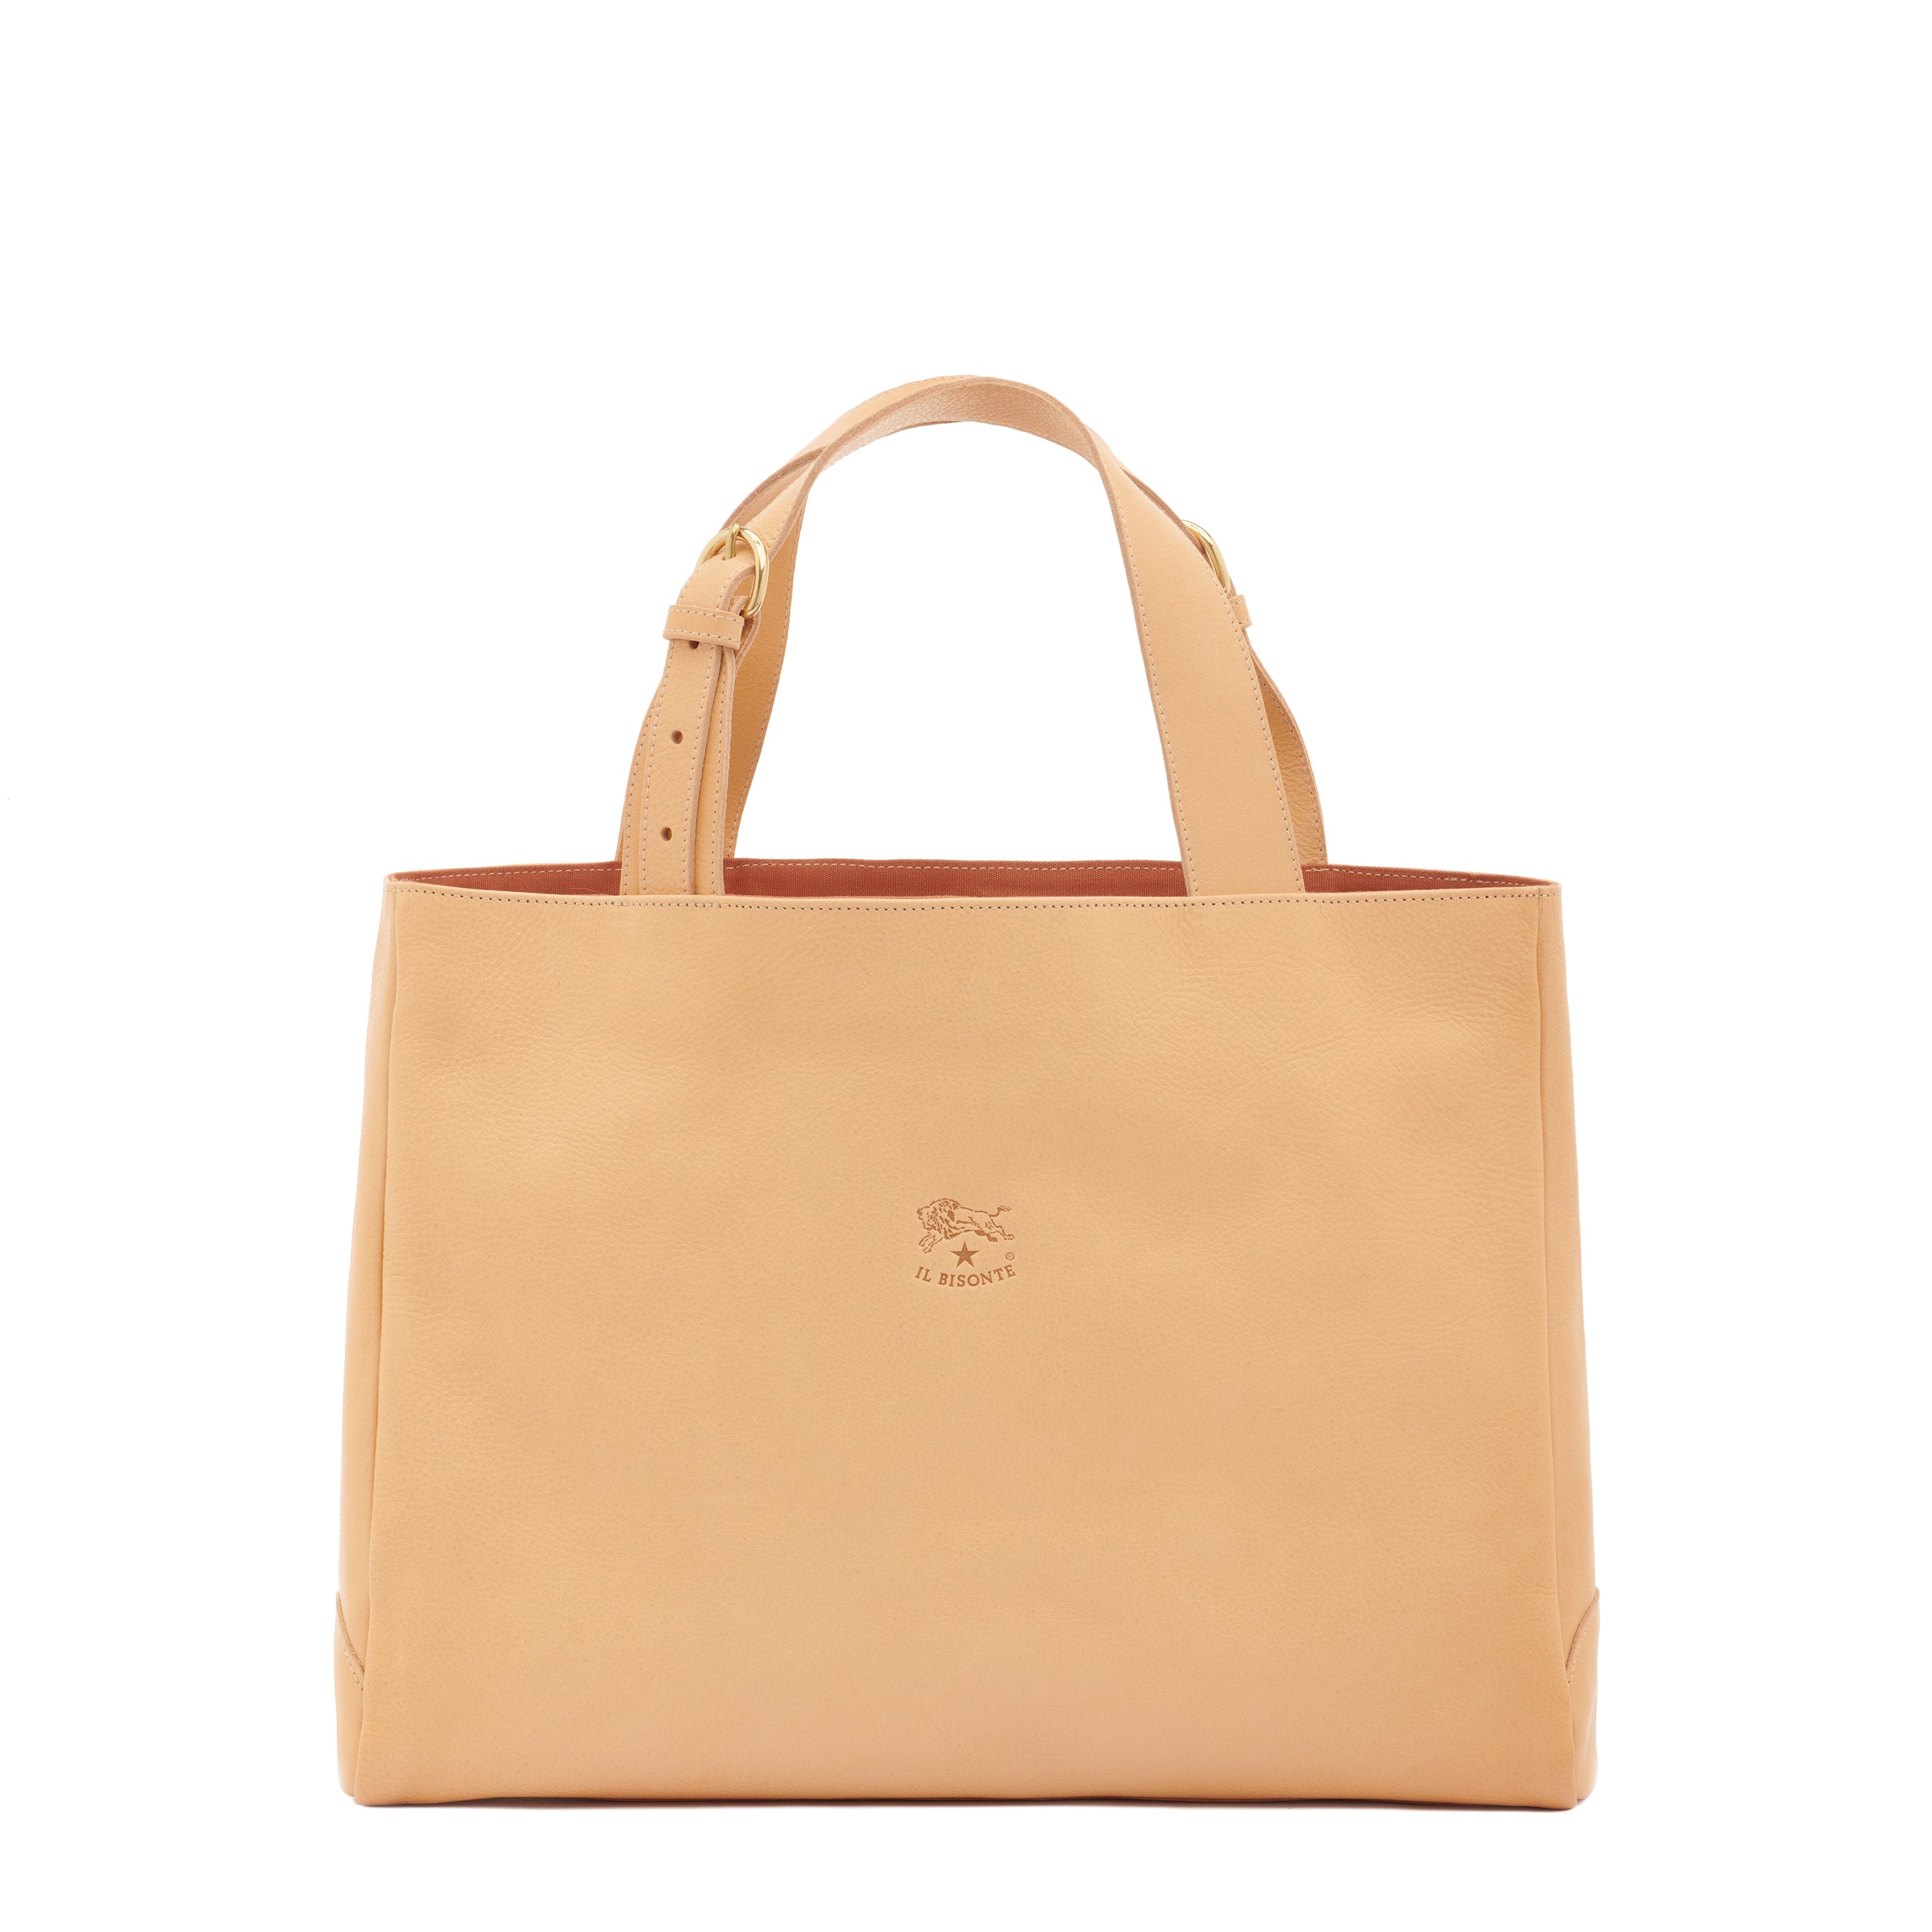 Women's shoulder bag in leather color natural – Il Bisonte